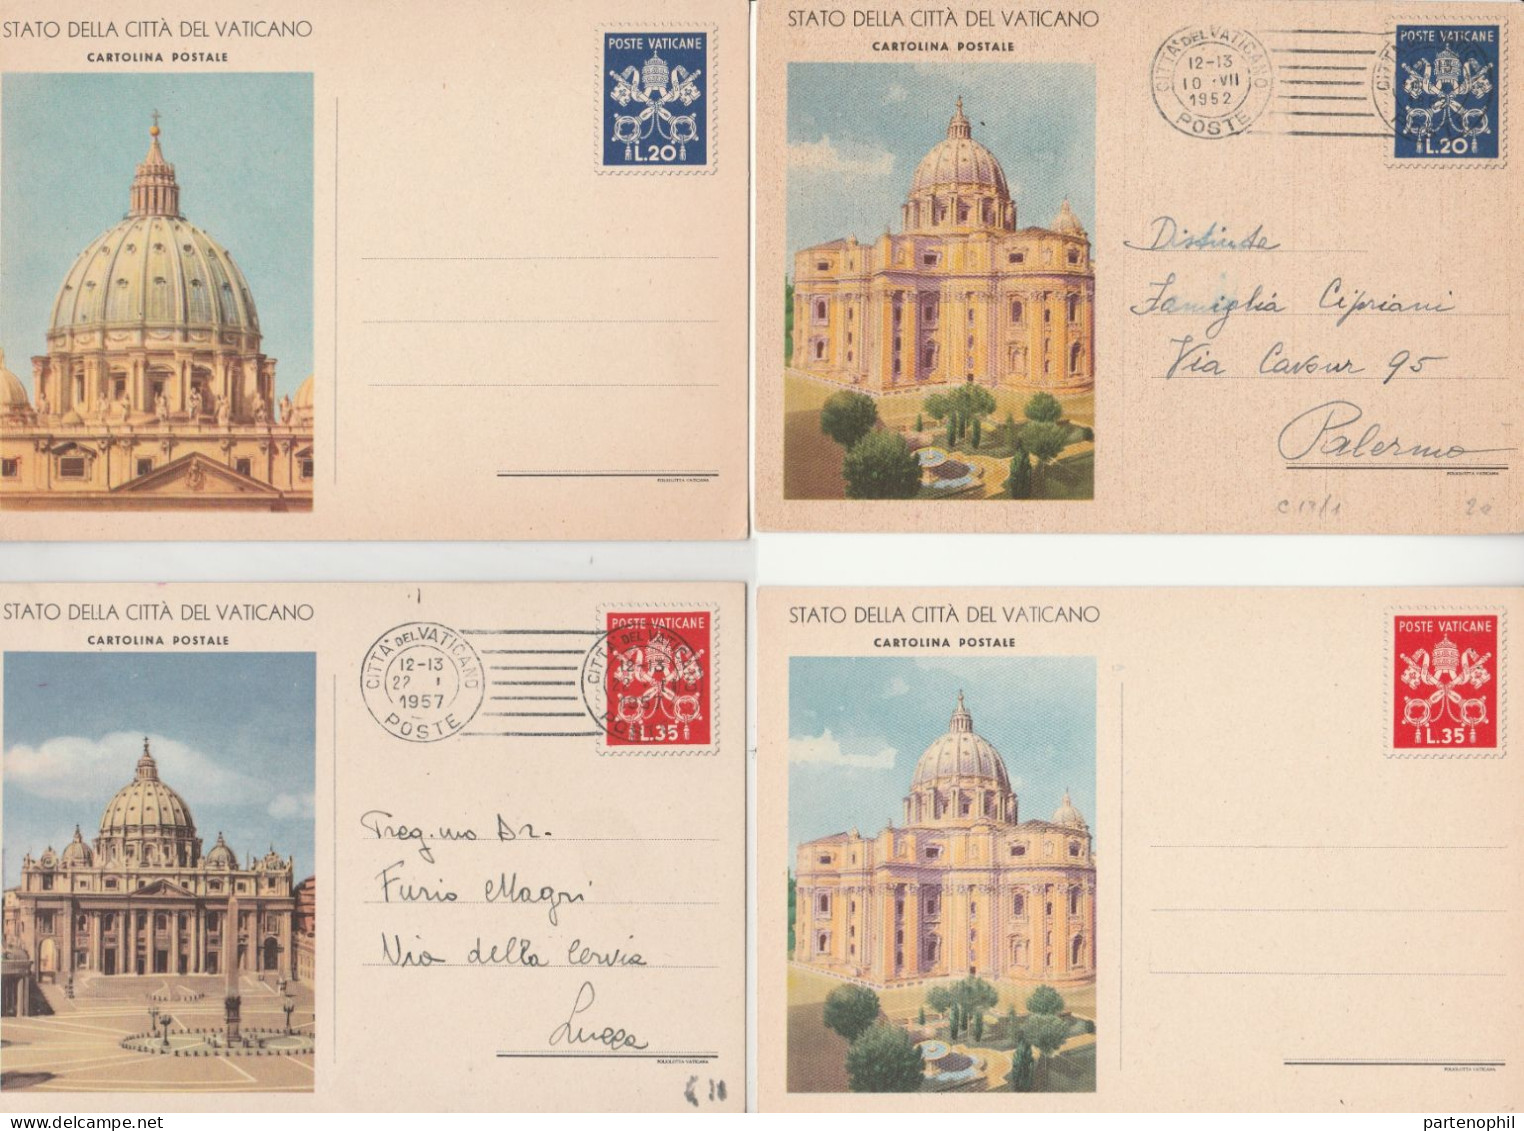 673 - Vaticano - Interi Postali - 1947-58 Insieme di 28 interi del Vaticano incentrato sulle vedute tipiche dello stato,